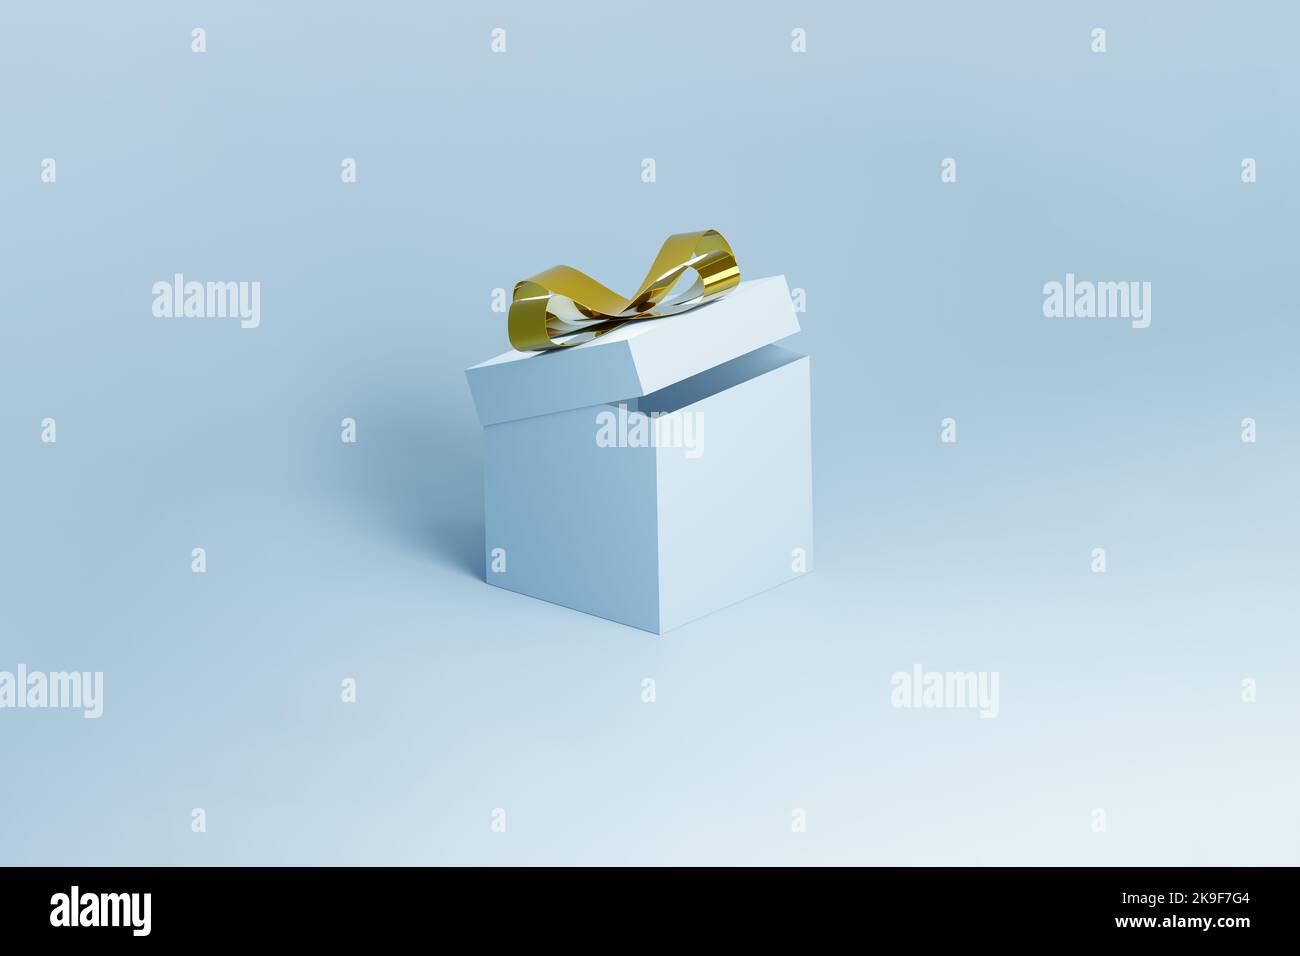 3d rendering di una scatola regalo blu aperta con nodo d'arco dorato. Vacanze invernali, natale relativa illustrazione di un regalo con spazio di testo, backgro blu Foto Stock